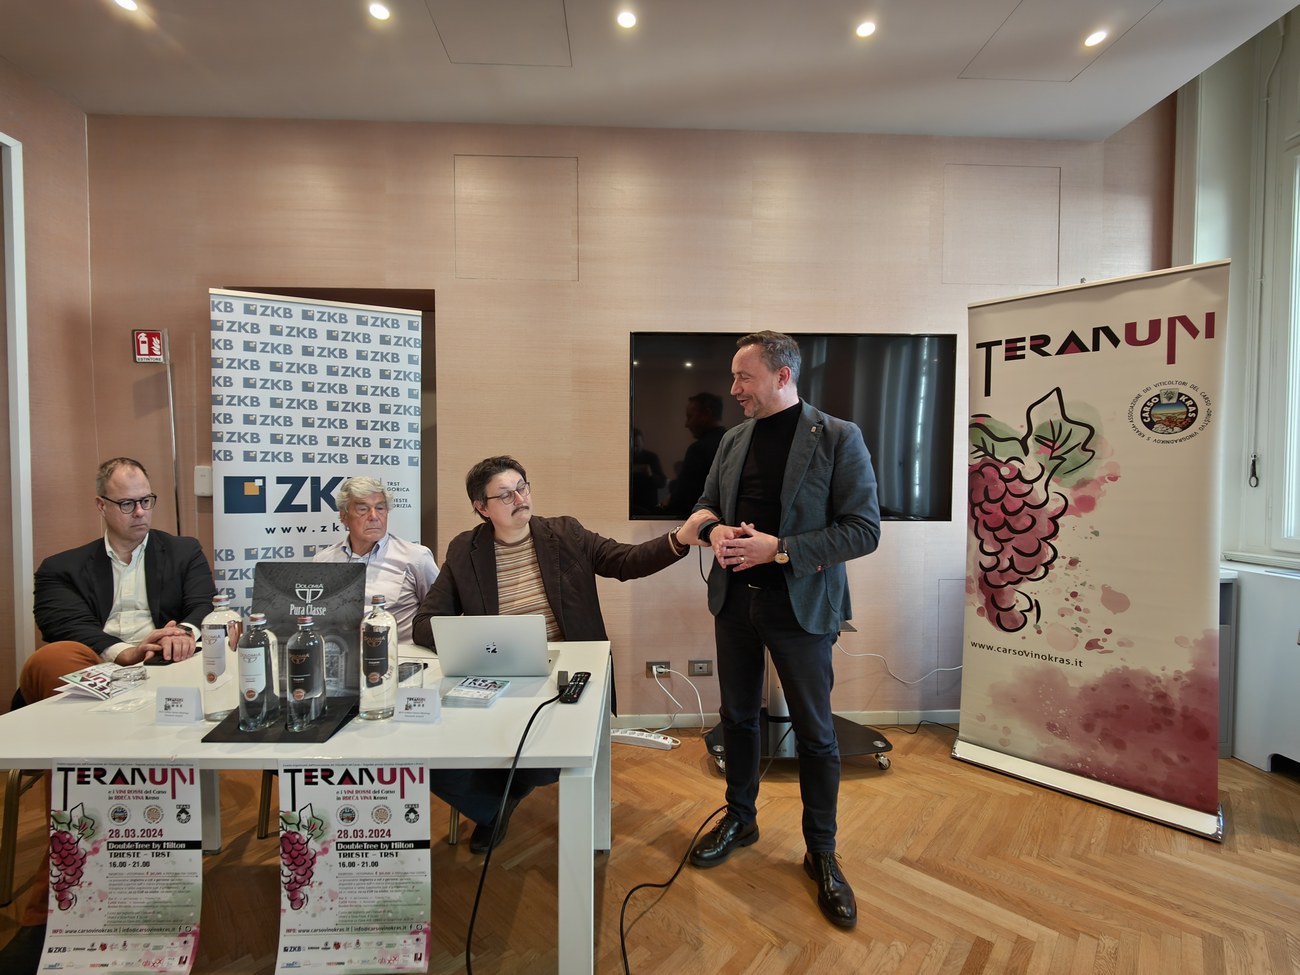 Teranum 2024 un momento della conferenza stampa di presentazione  da sx Pizziga, Lenardon, Jakomin. In piedi Igor Gabroves, sindaco di Duino Aurisina